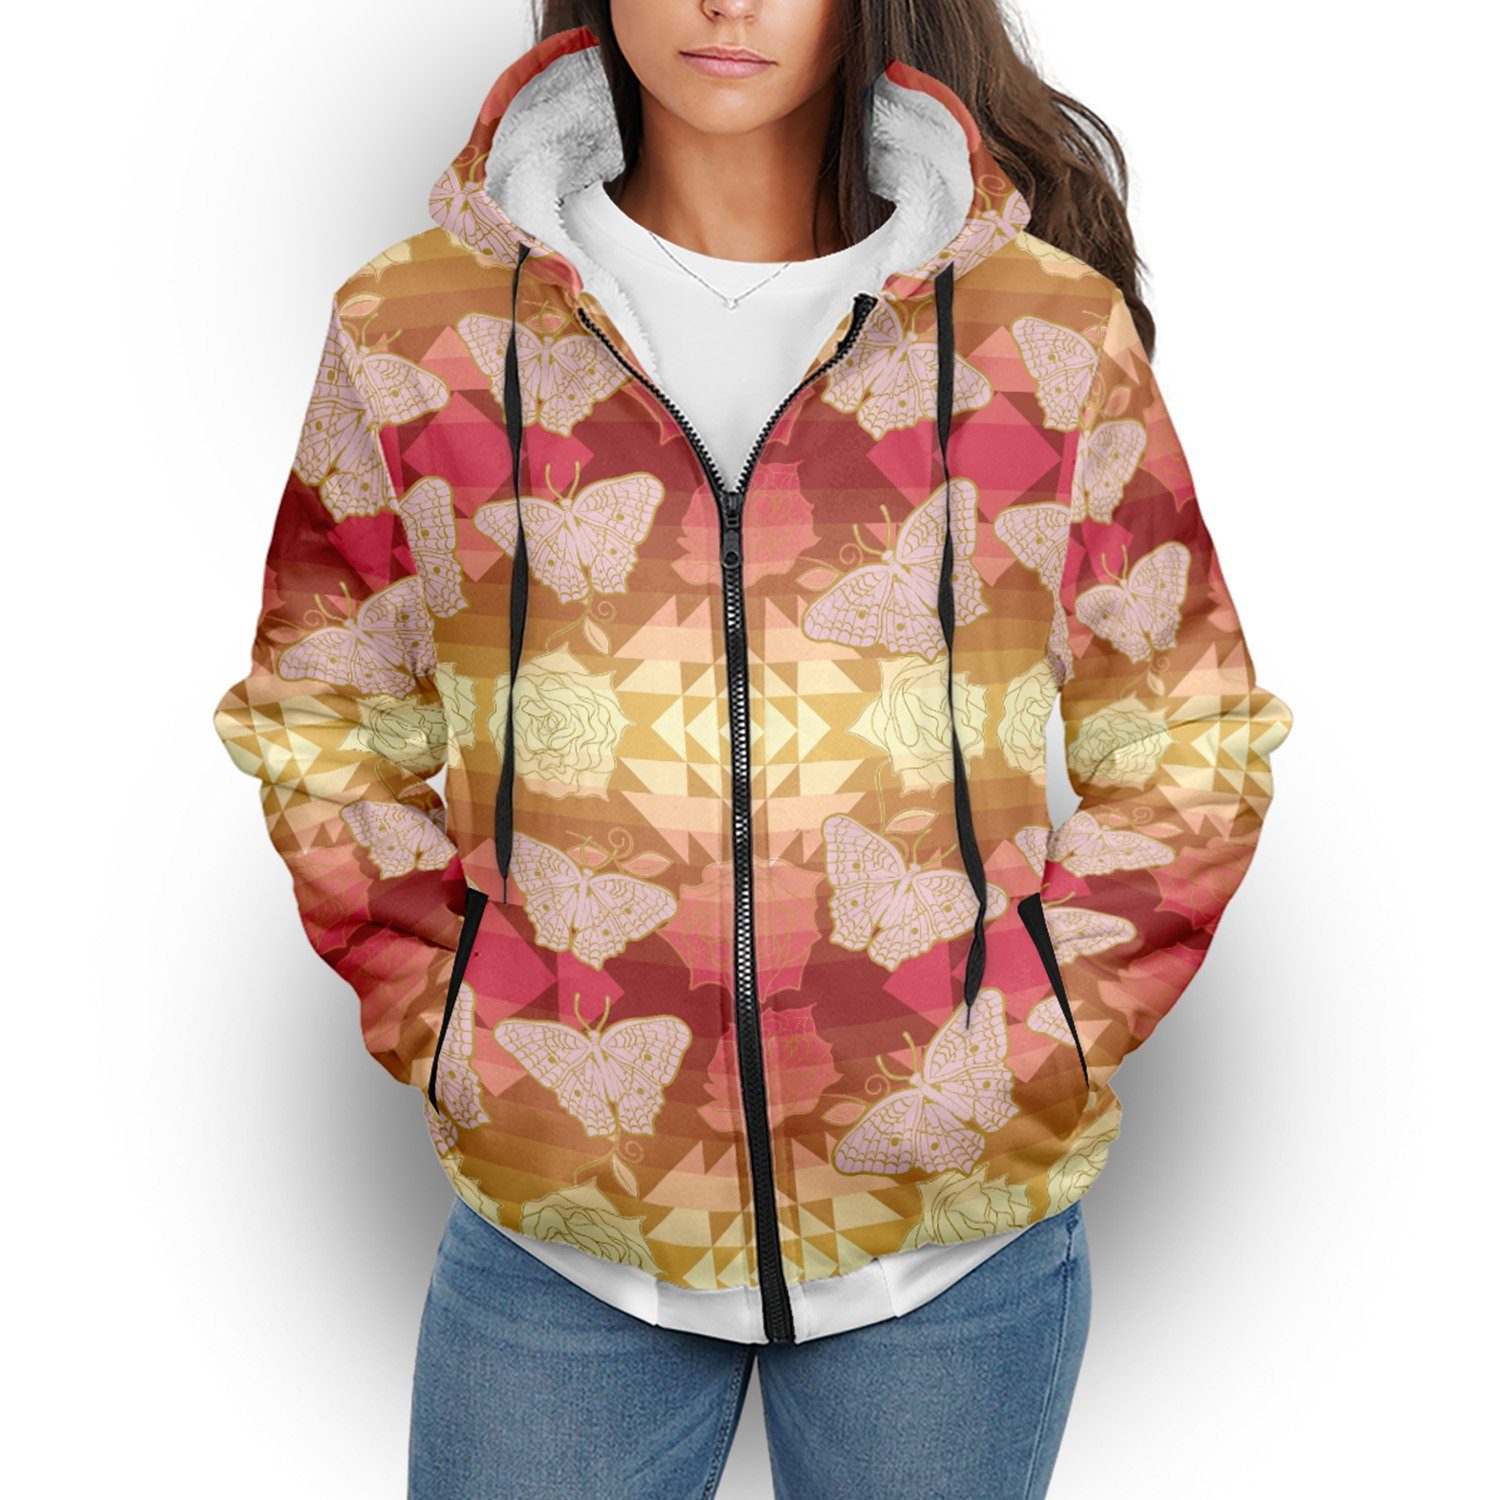 Butterfly and Roses on Geometric Sherpa Hoodie hoodie Herman 